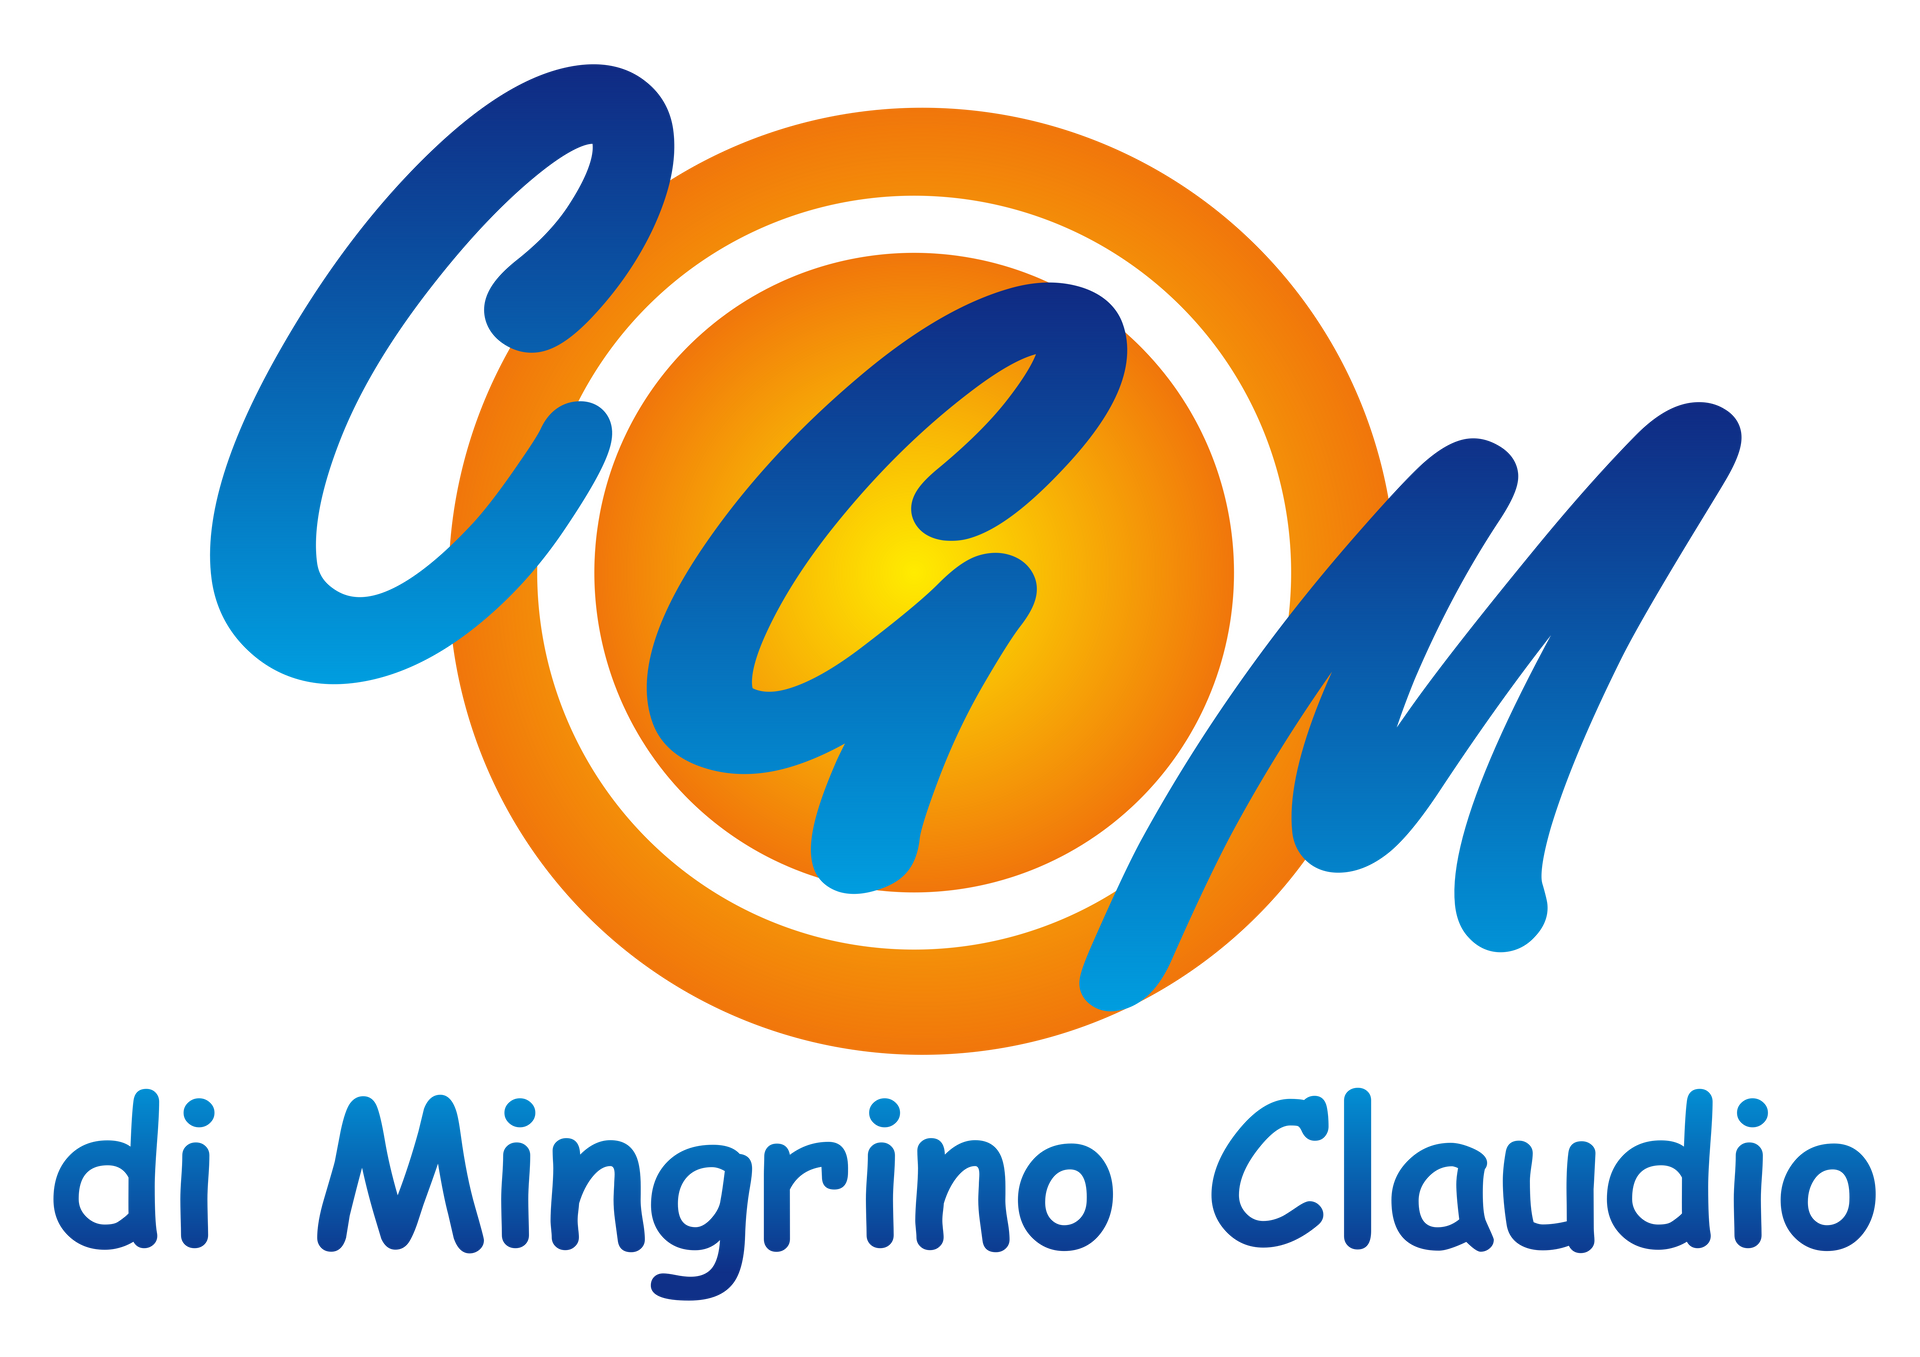 CGM di Mingrino Claudio - logo